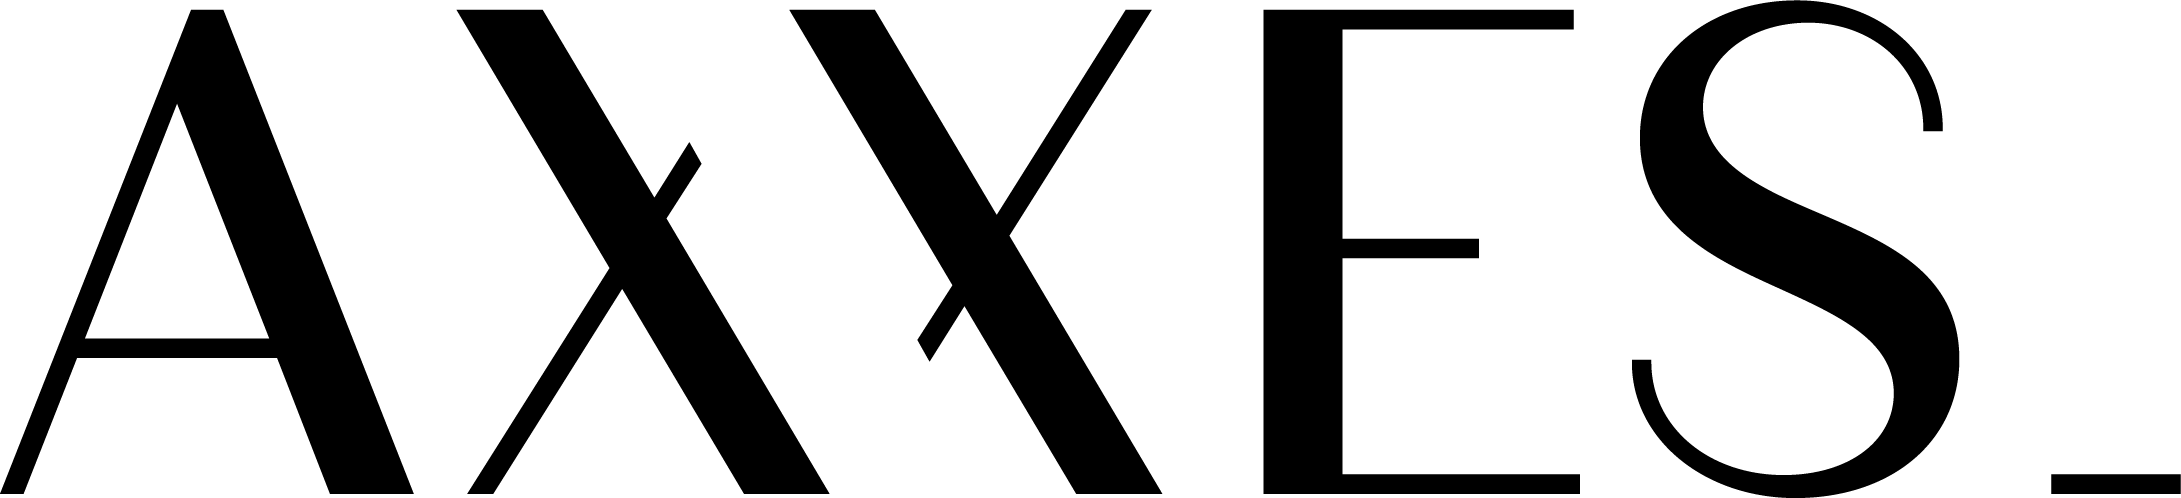 axxes-logo